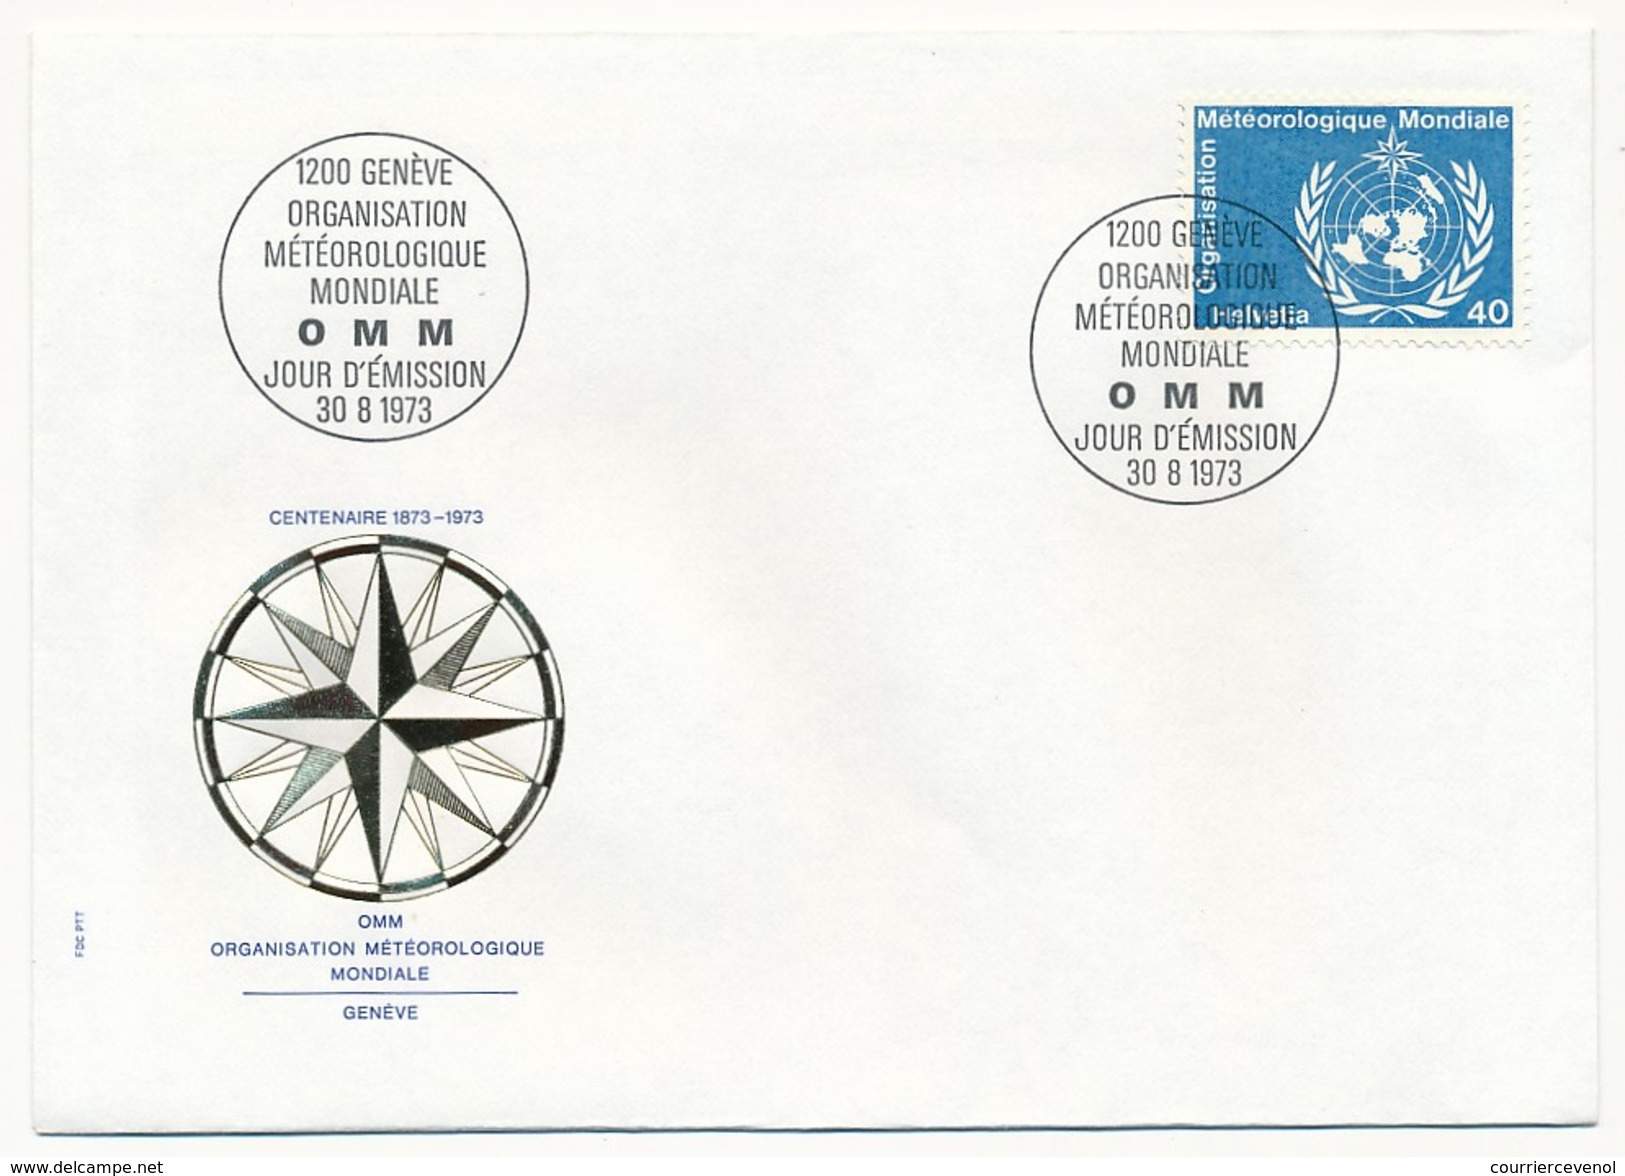 SUISSE - 8 Enveloppes FDC - Organisation Météorologique Mondiale 1973 (Timbres De Service) - Milieubescherming & Klimaat